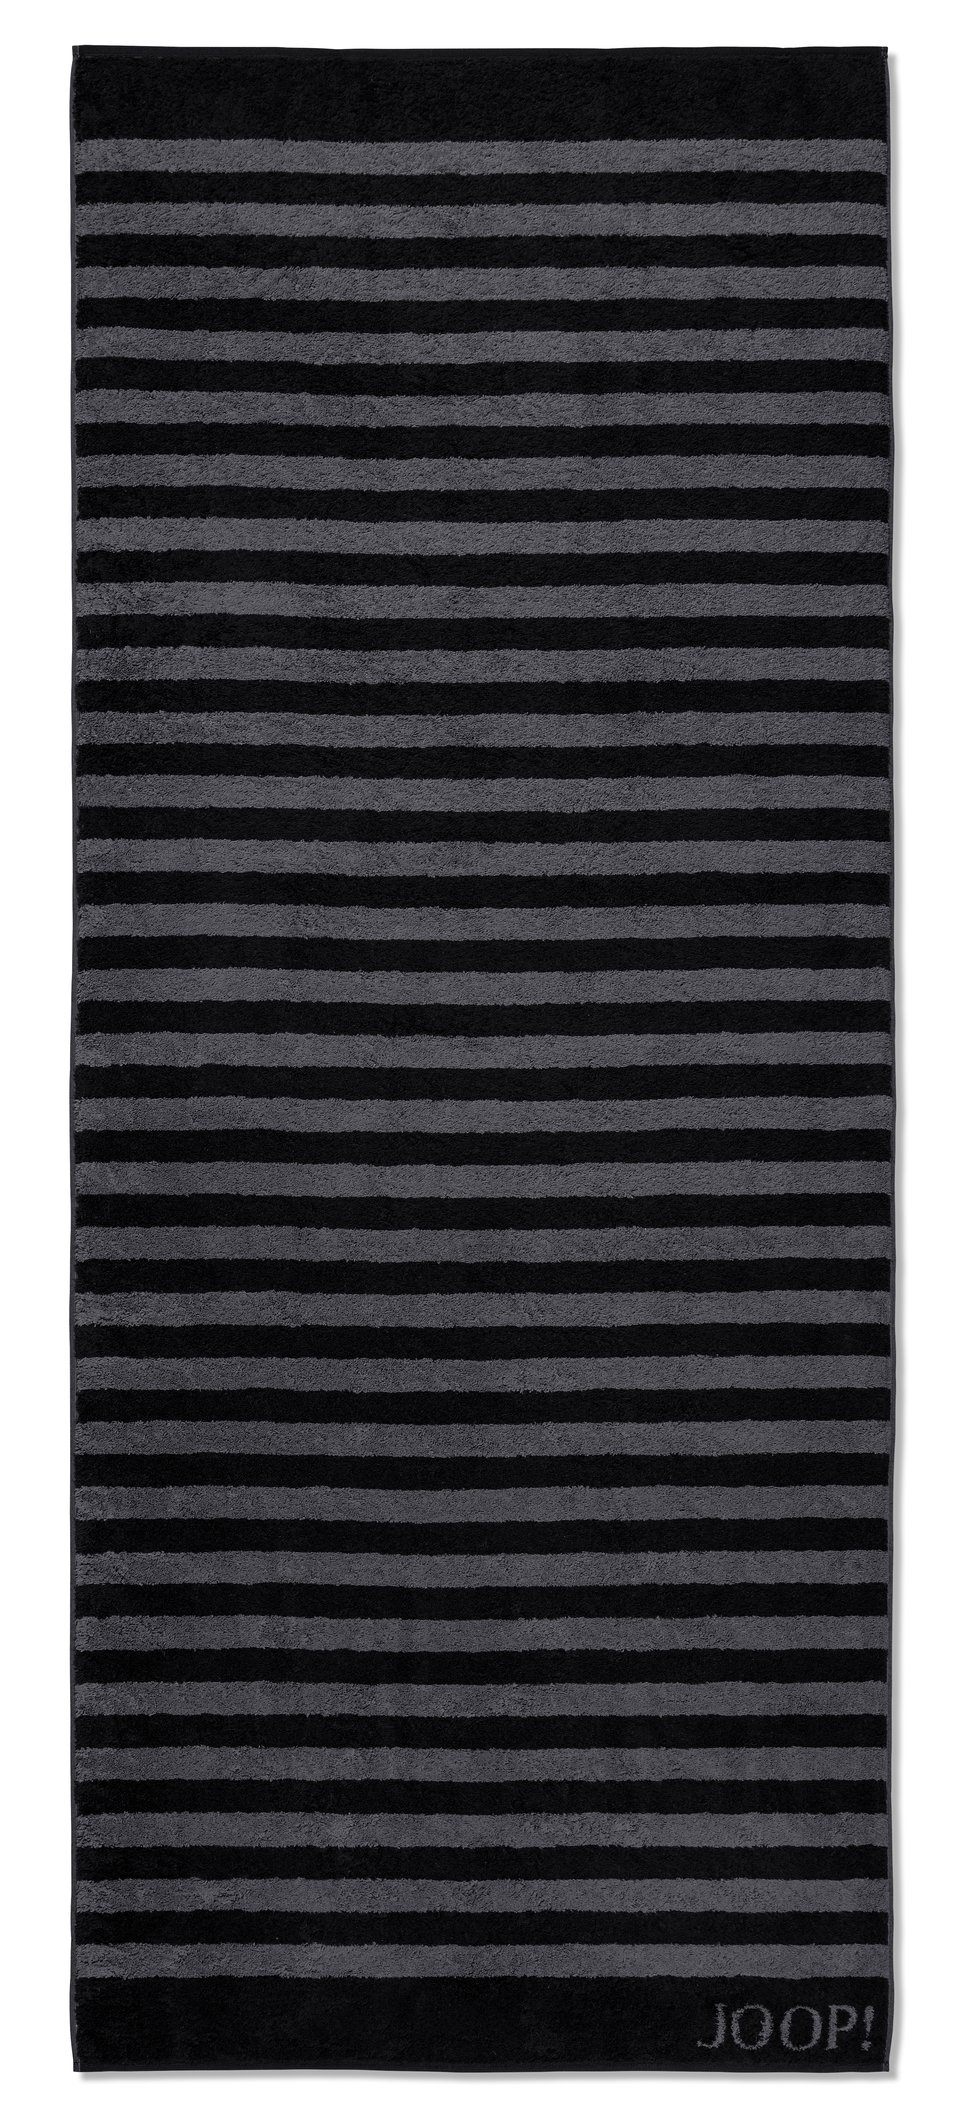 JOOP! Classic Stripes 1610-90 Schwarz Frottee Saunatuch 80x200 cm